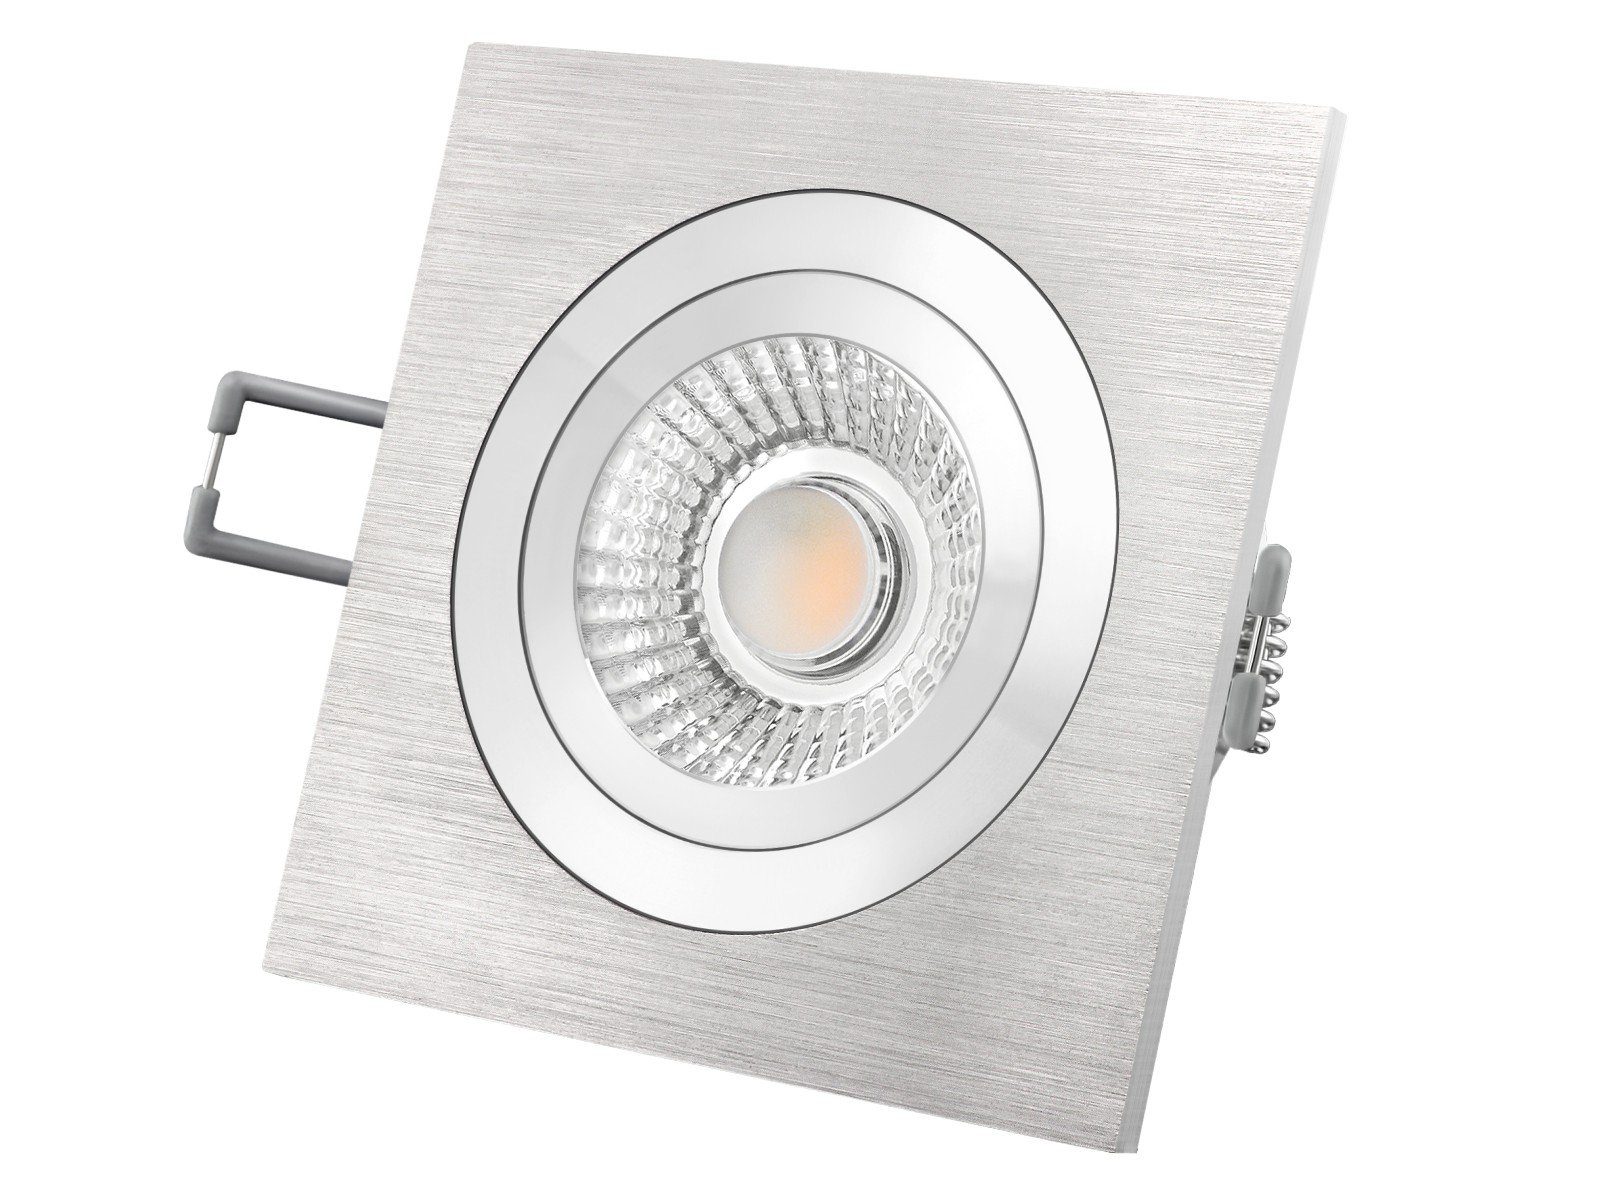 SSC-LUXon LED Einbaustrahler QF-2 Alu LED-Einbauspot flach schwenkbar mit LED-Modul 230V, 6W, Warmweiß